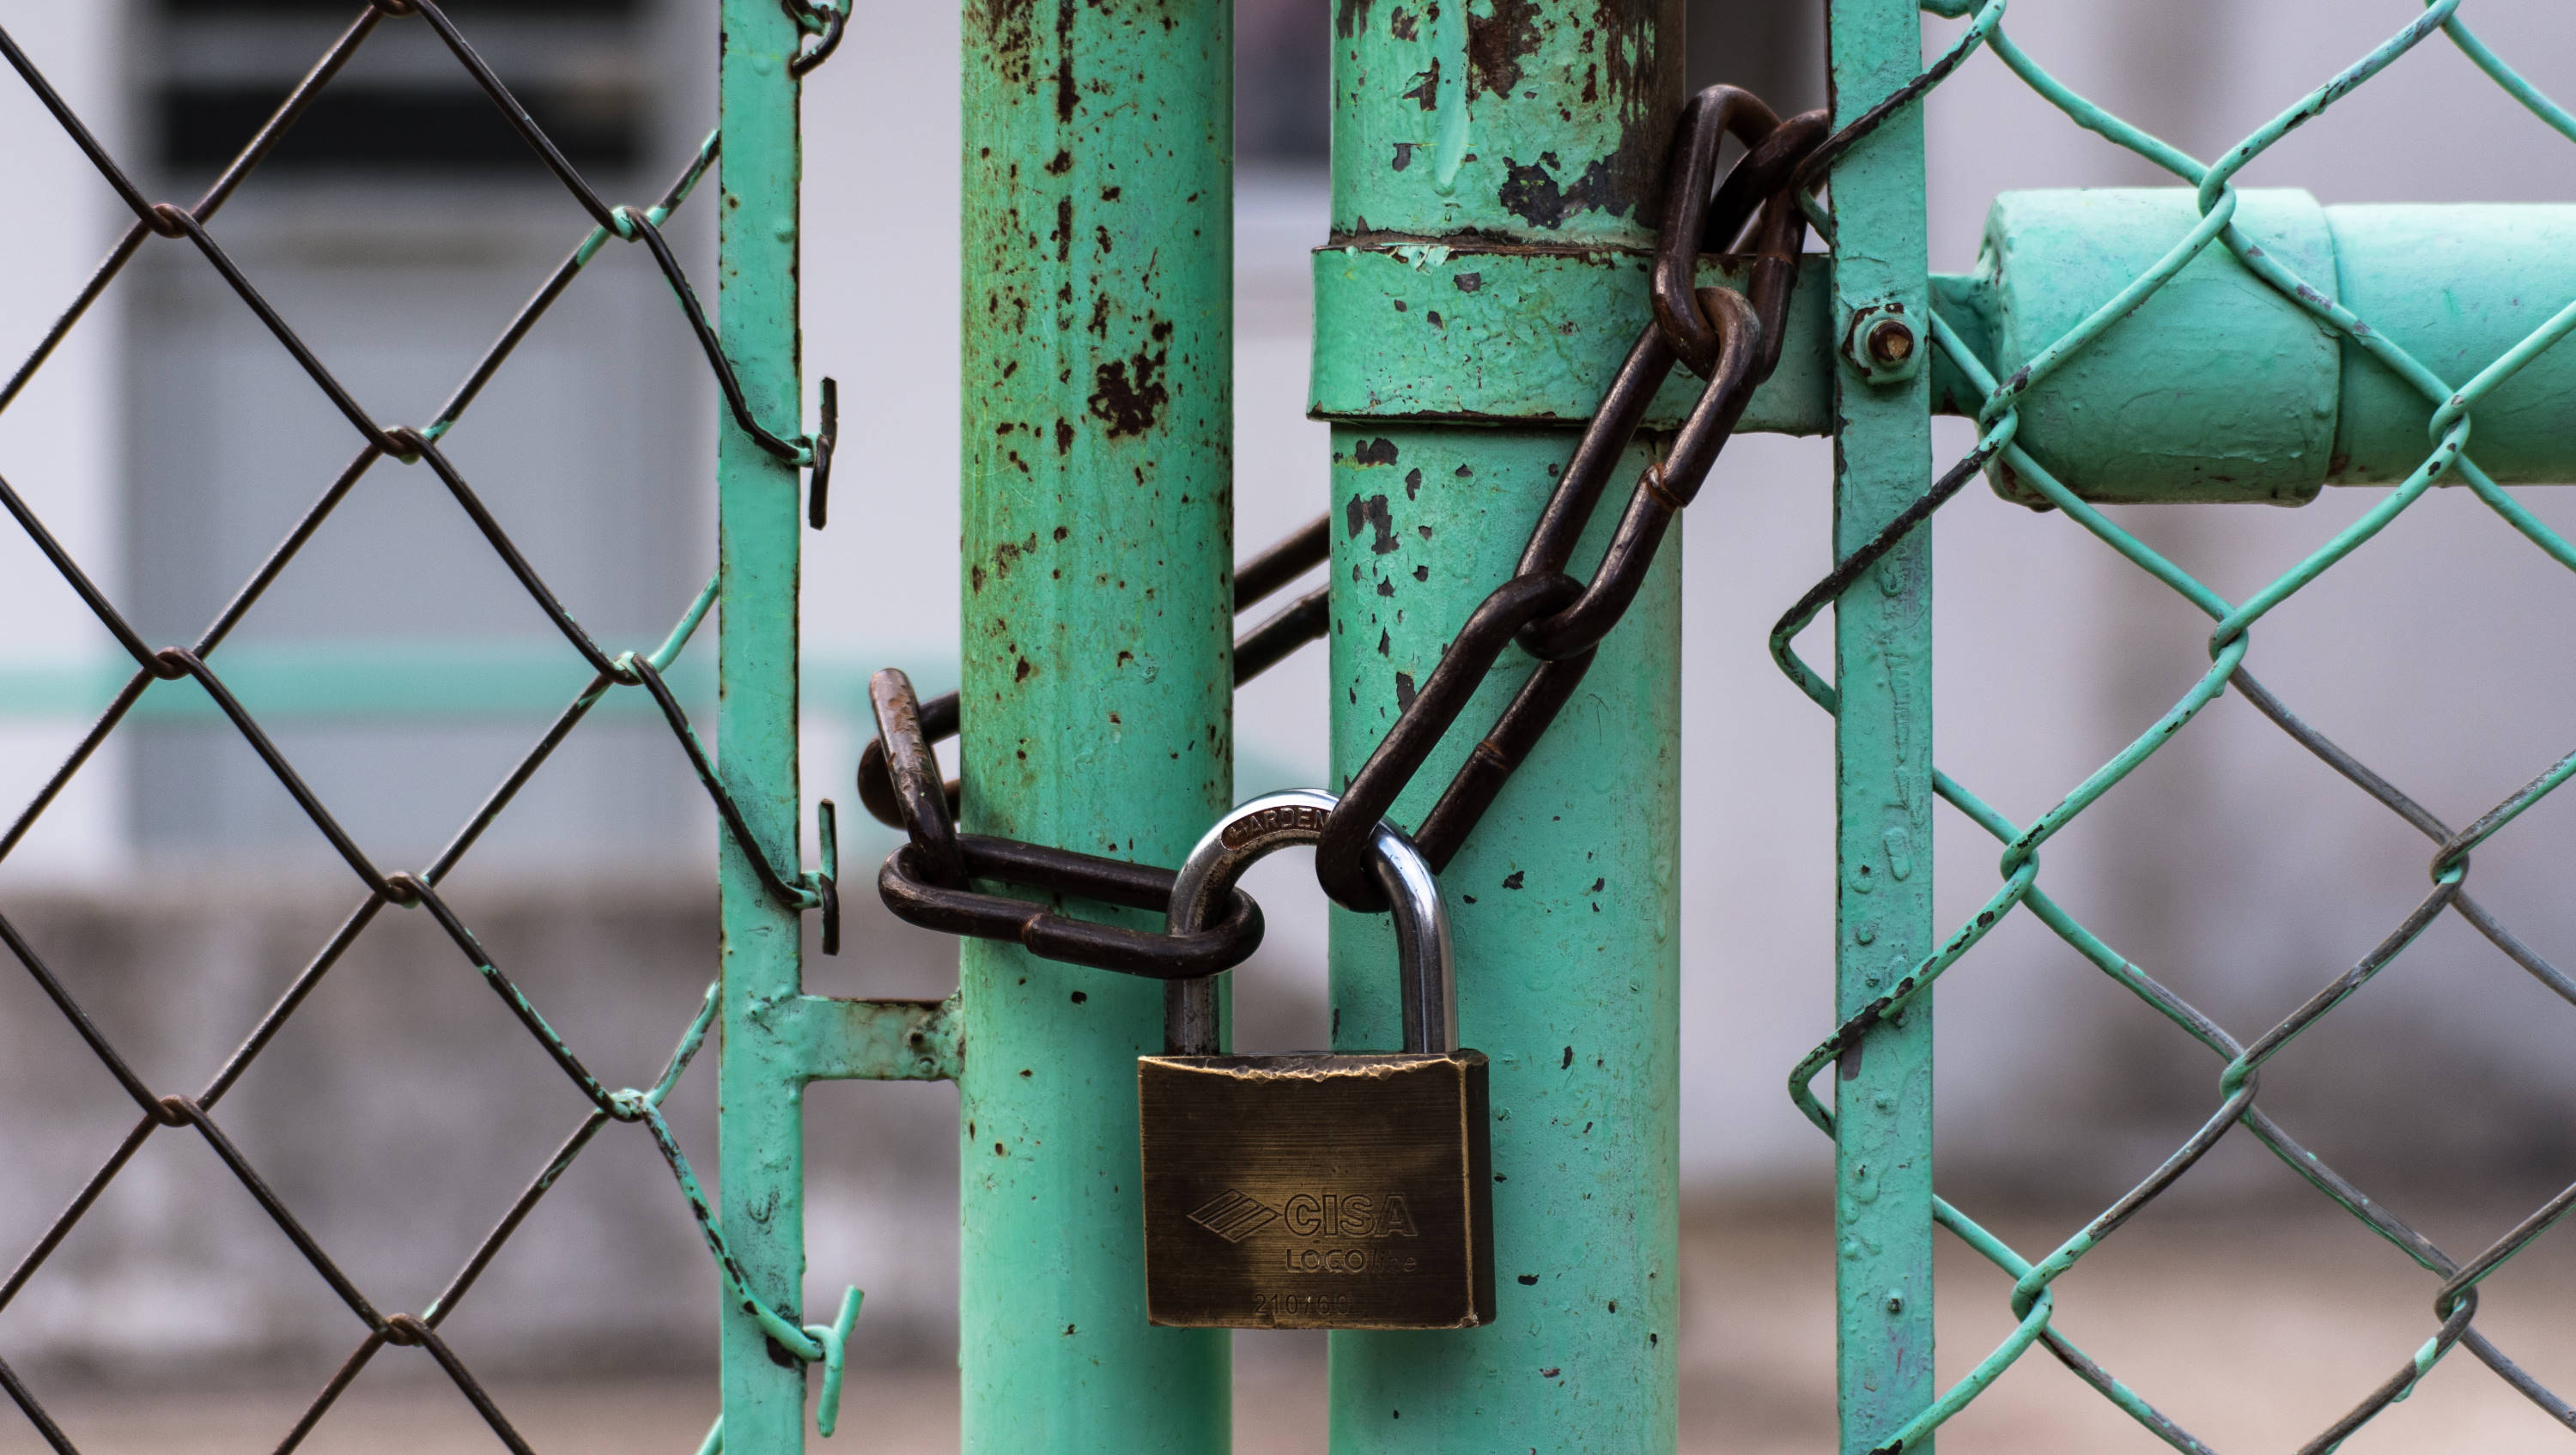 A padlock that locks a chain around a gate